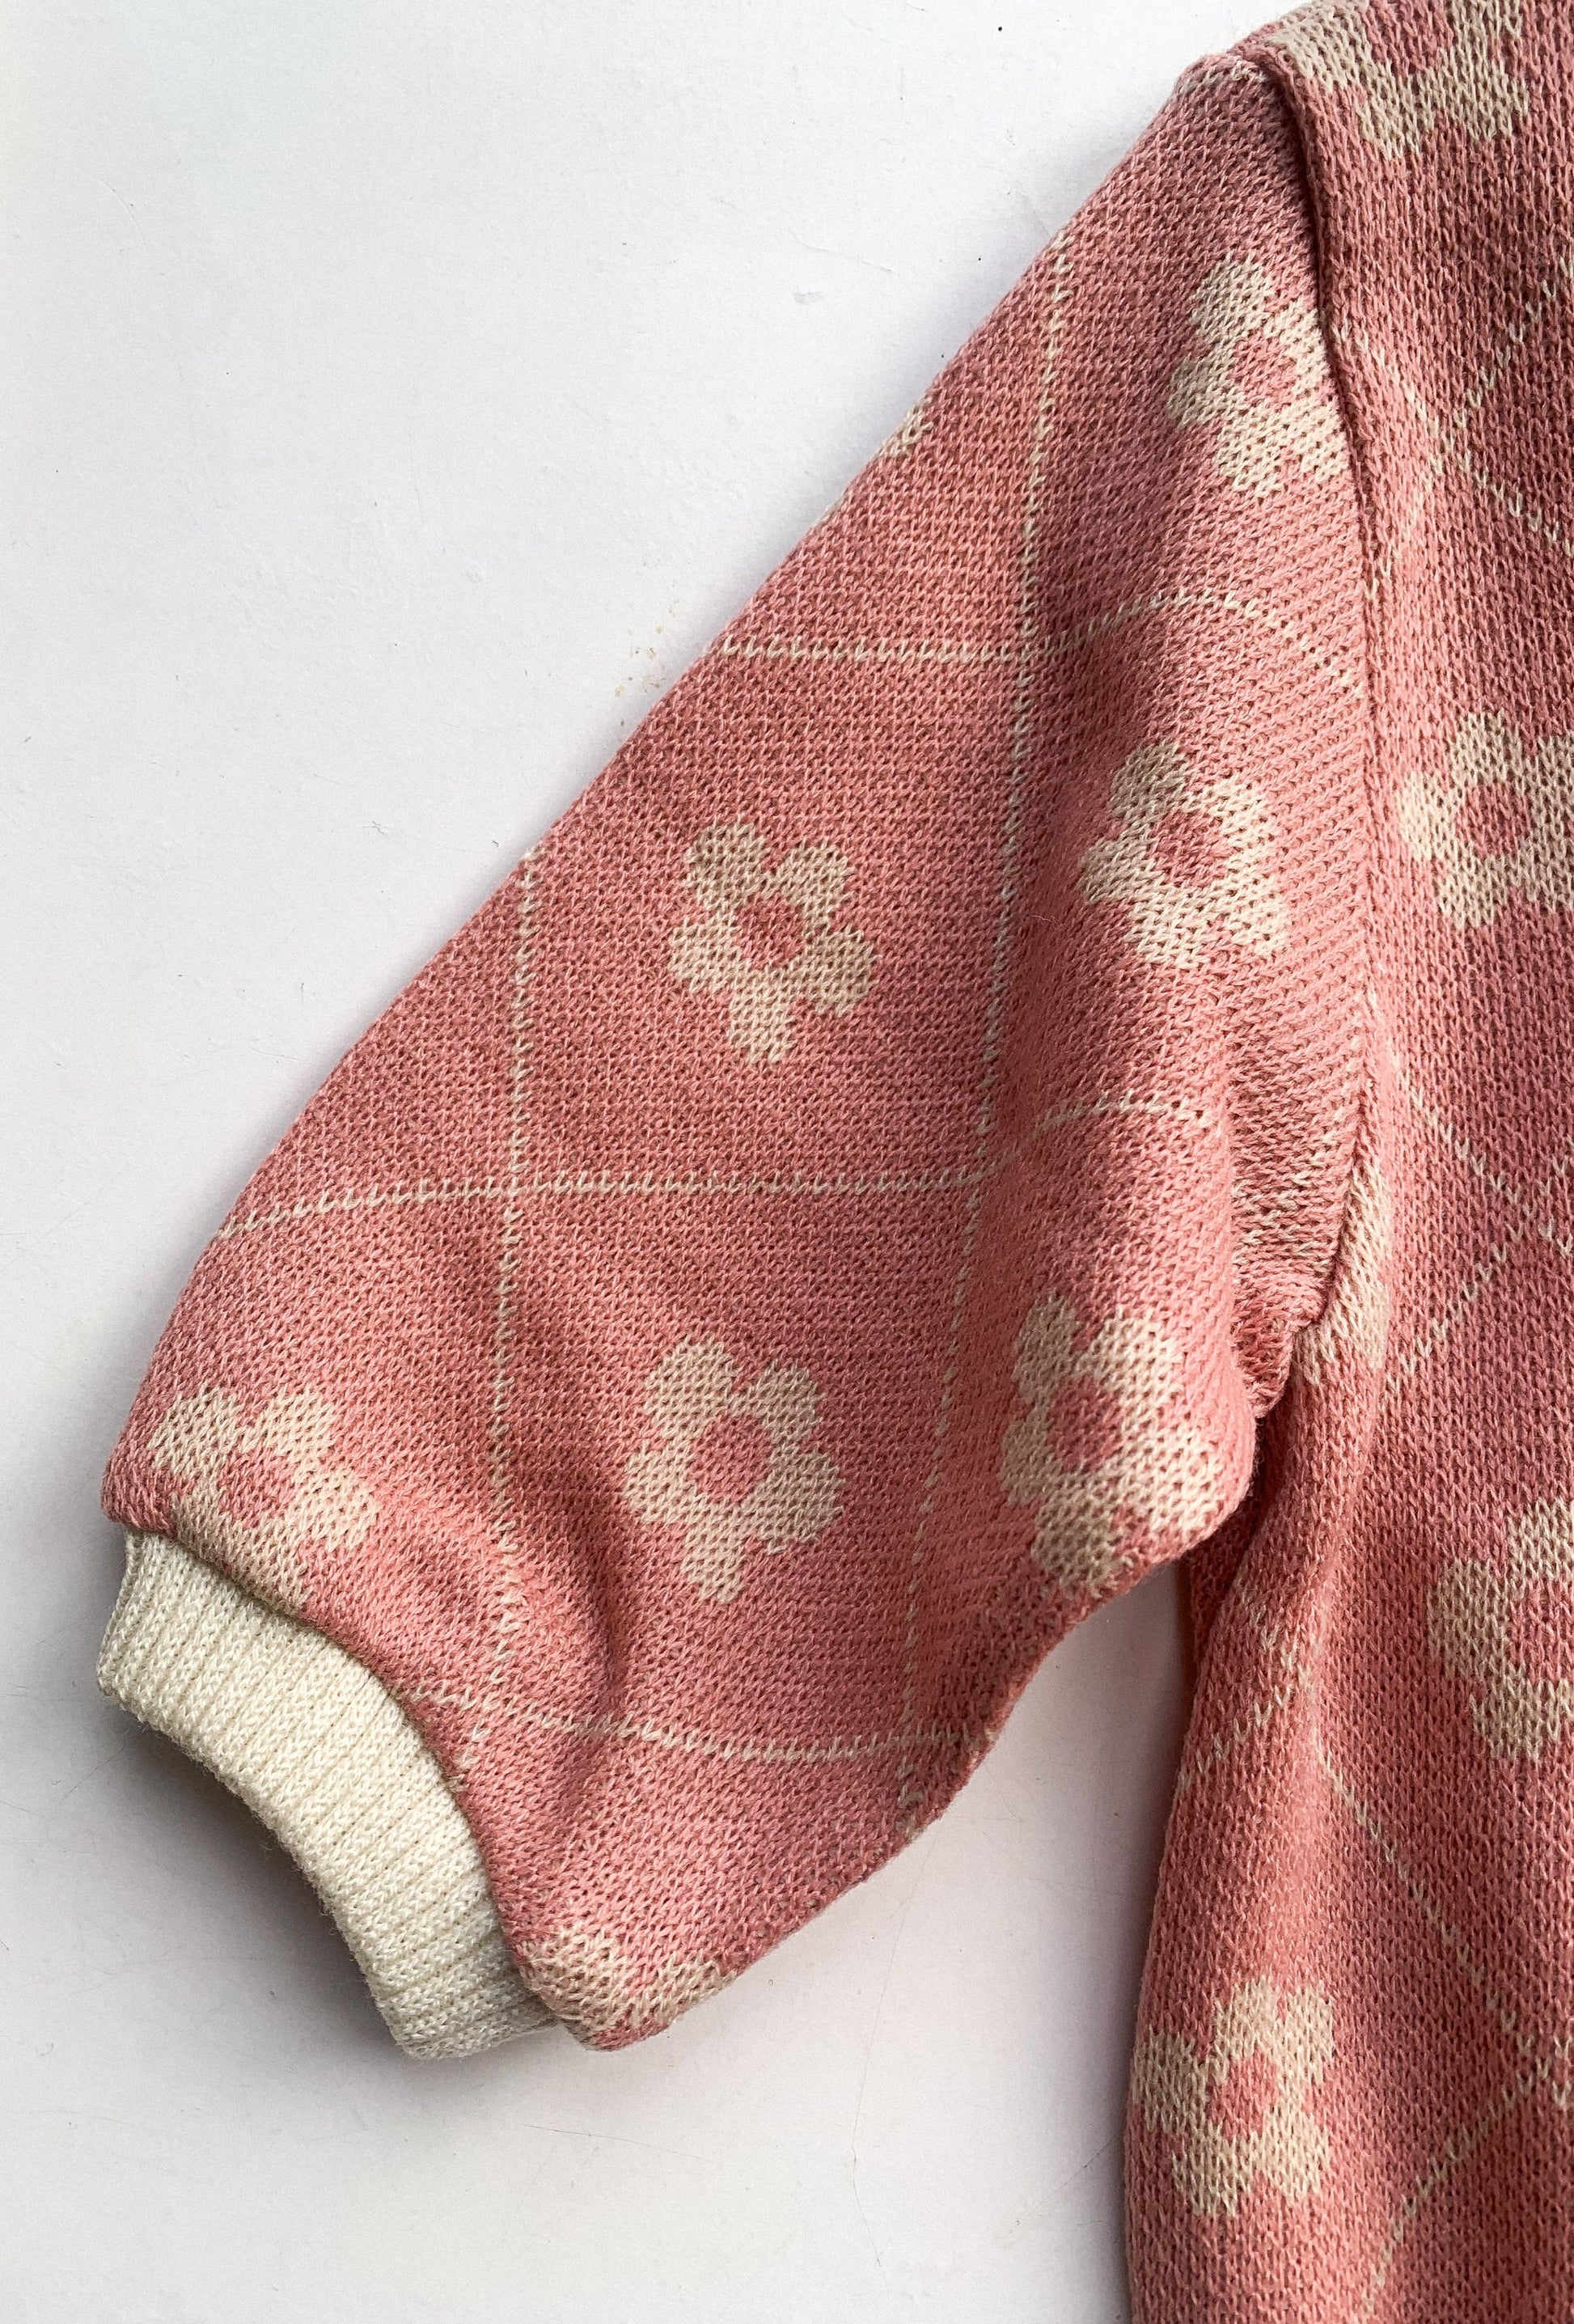 FINE KNIT PRINT ROMPER IN VINTAGE ROSE - Vintage Blossom